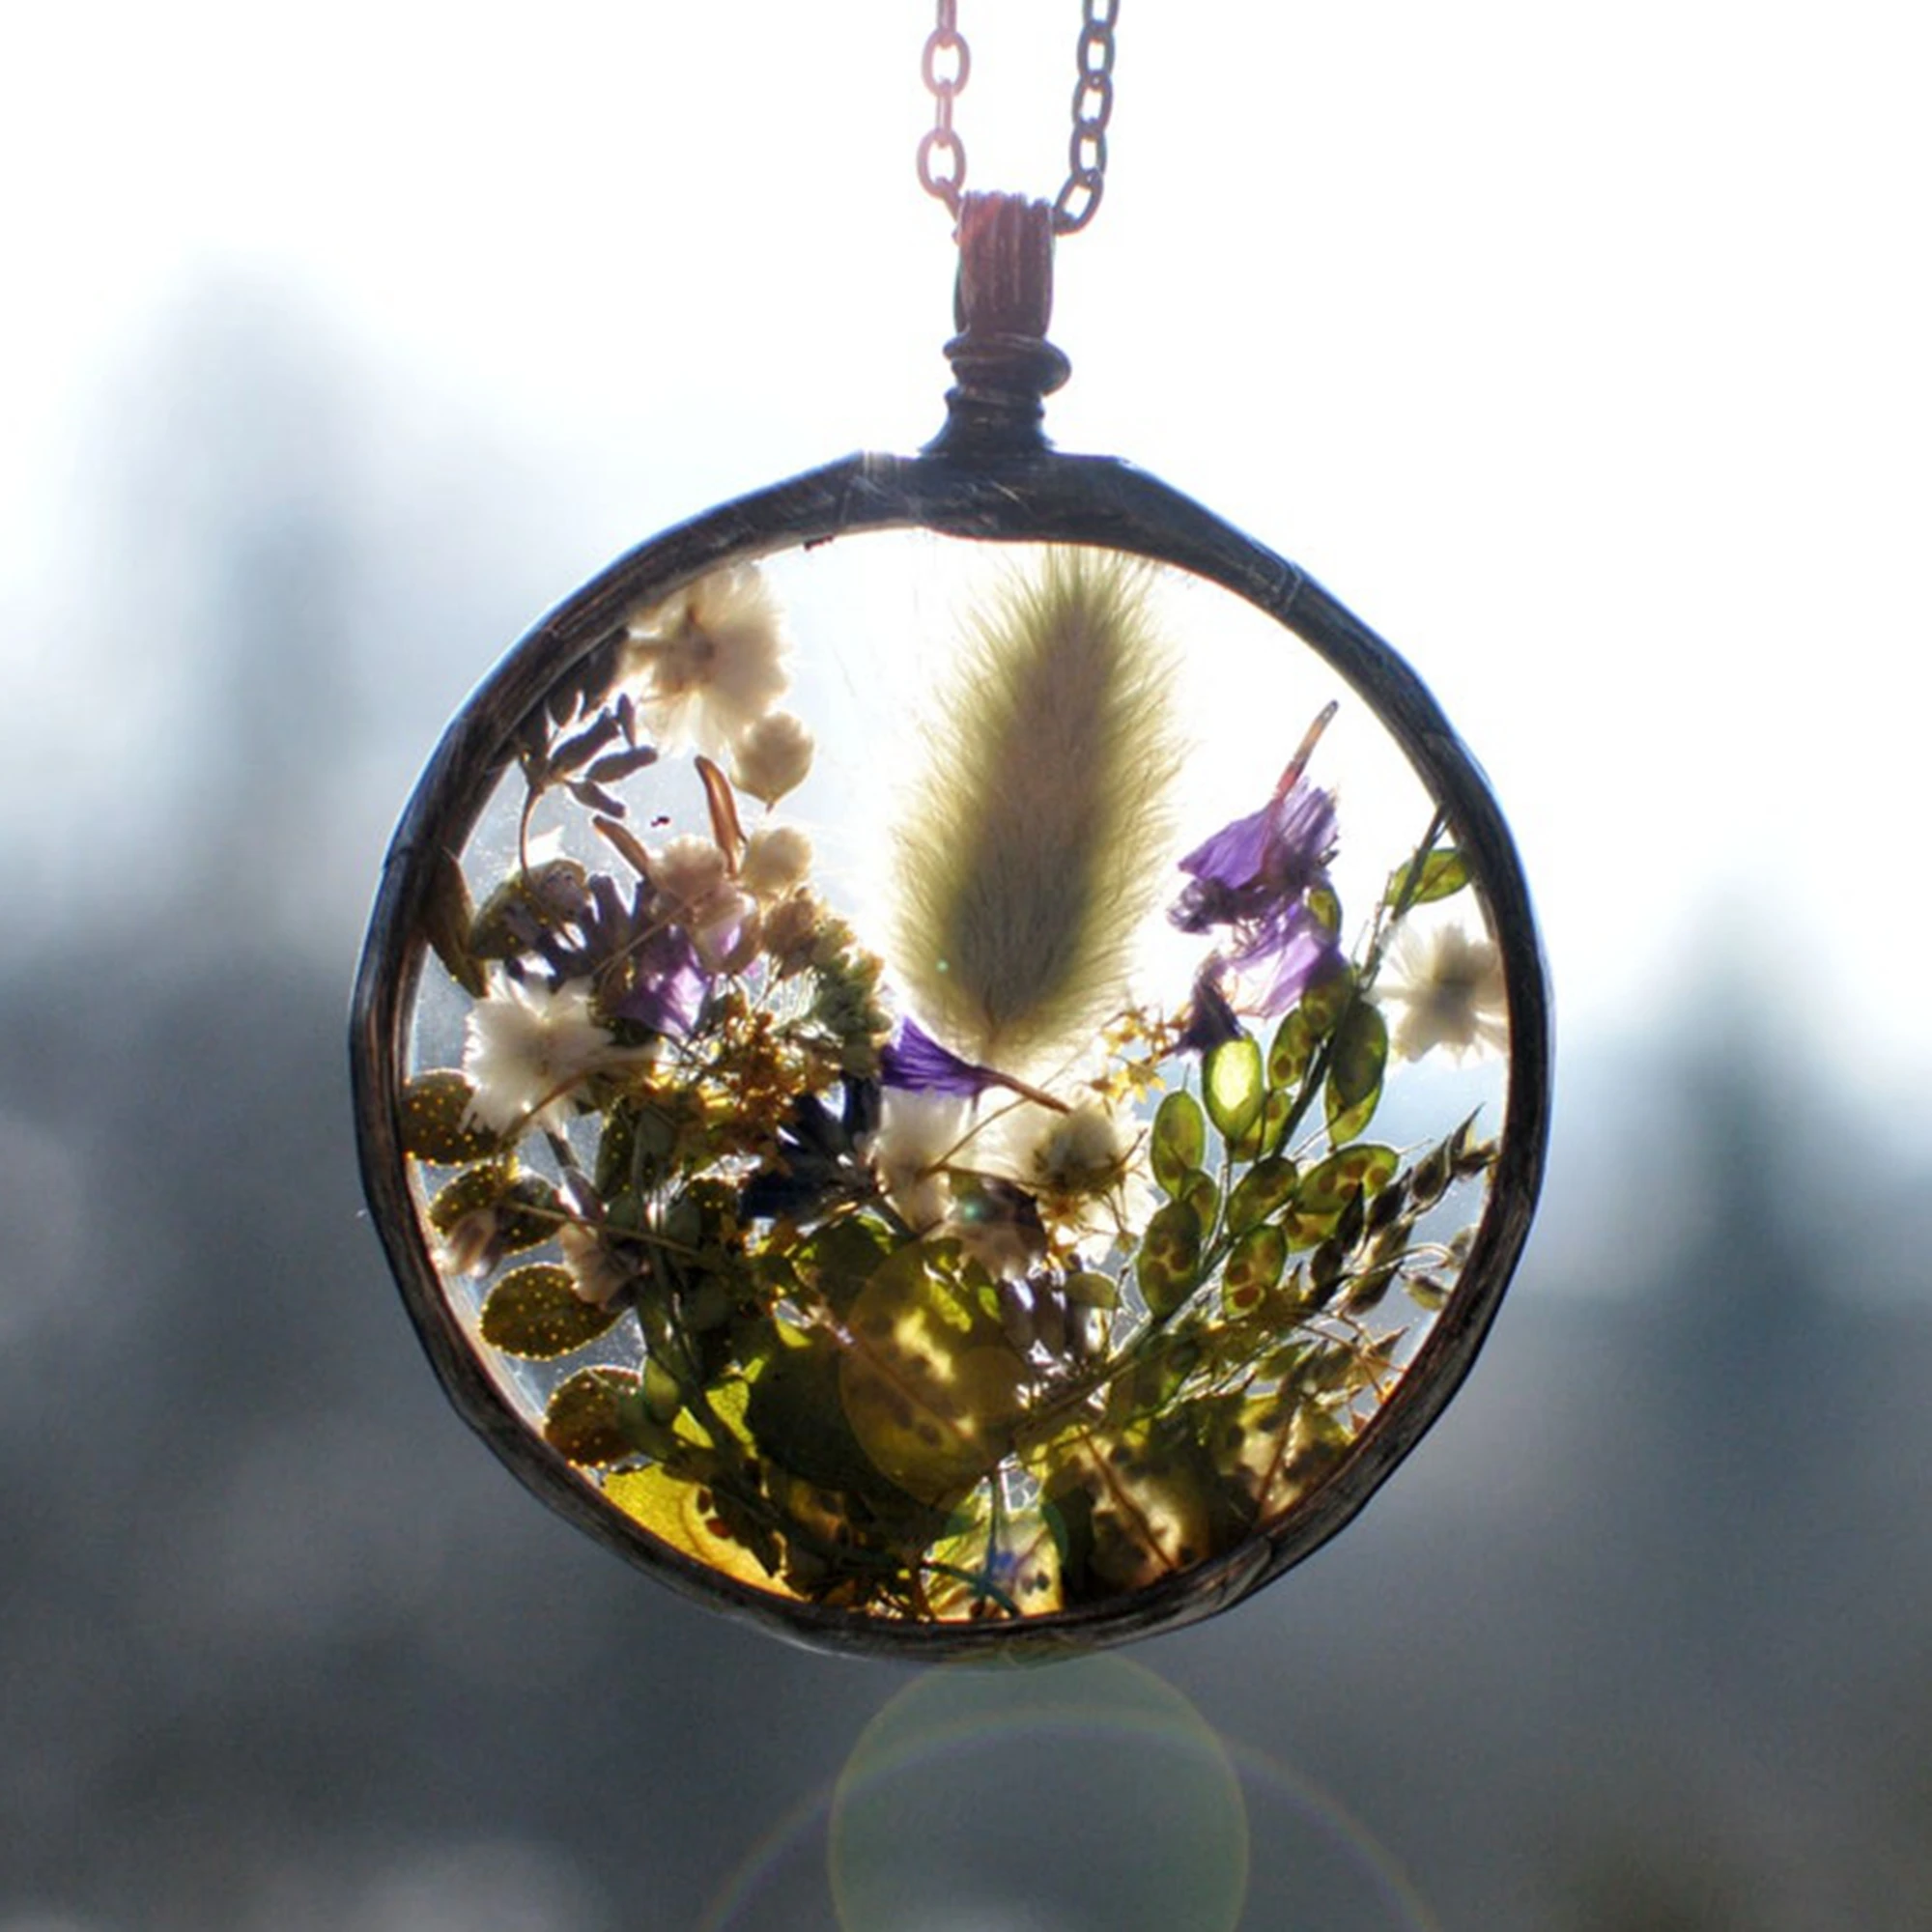 

Ожерелье в виде луга, террариума, ботаническое прессованное цветочное ожерелье в форме сердца, украшения в стиле природы